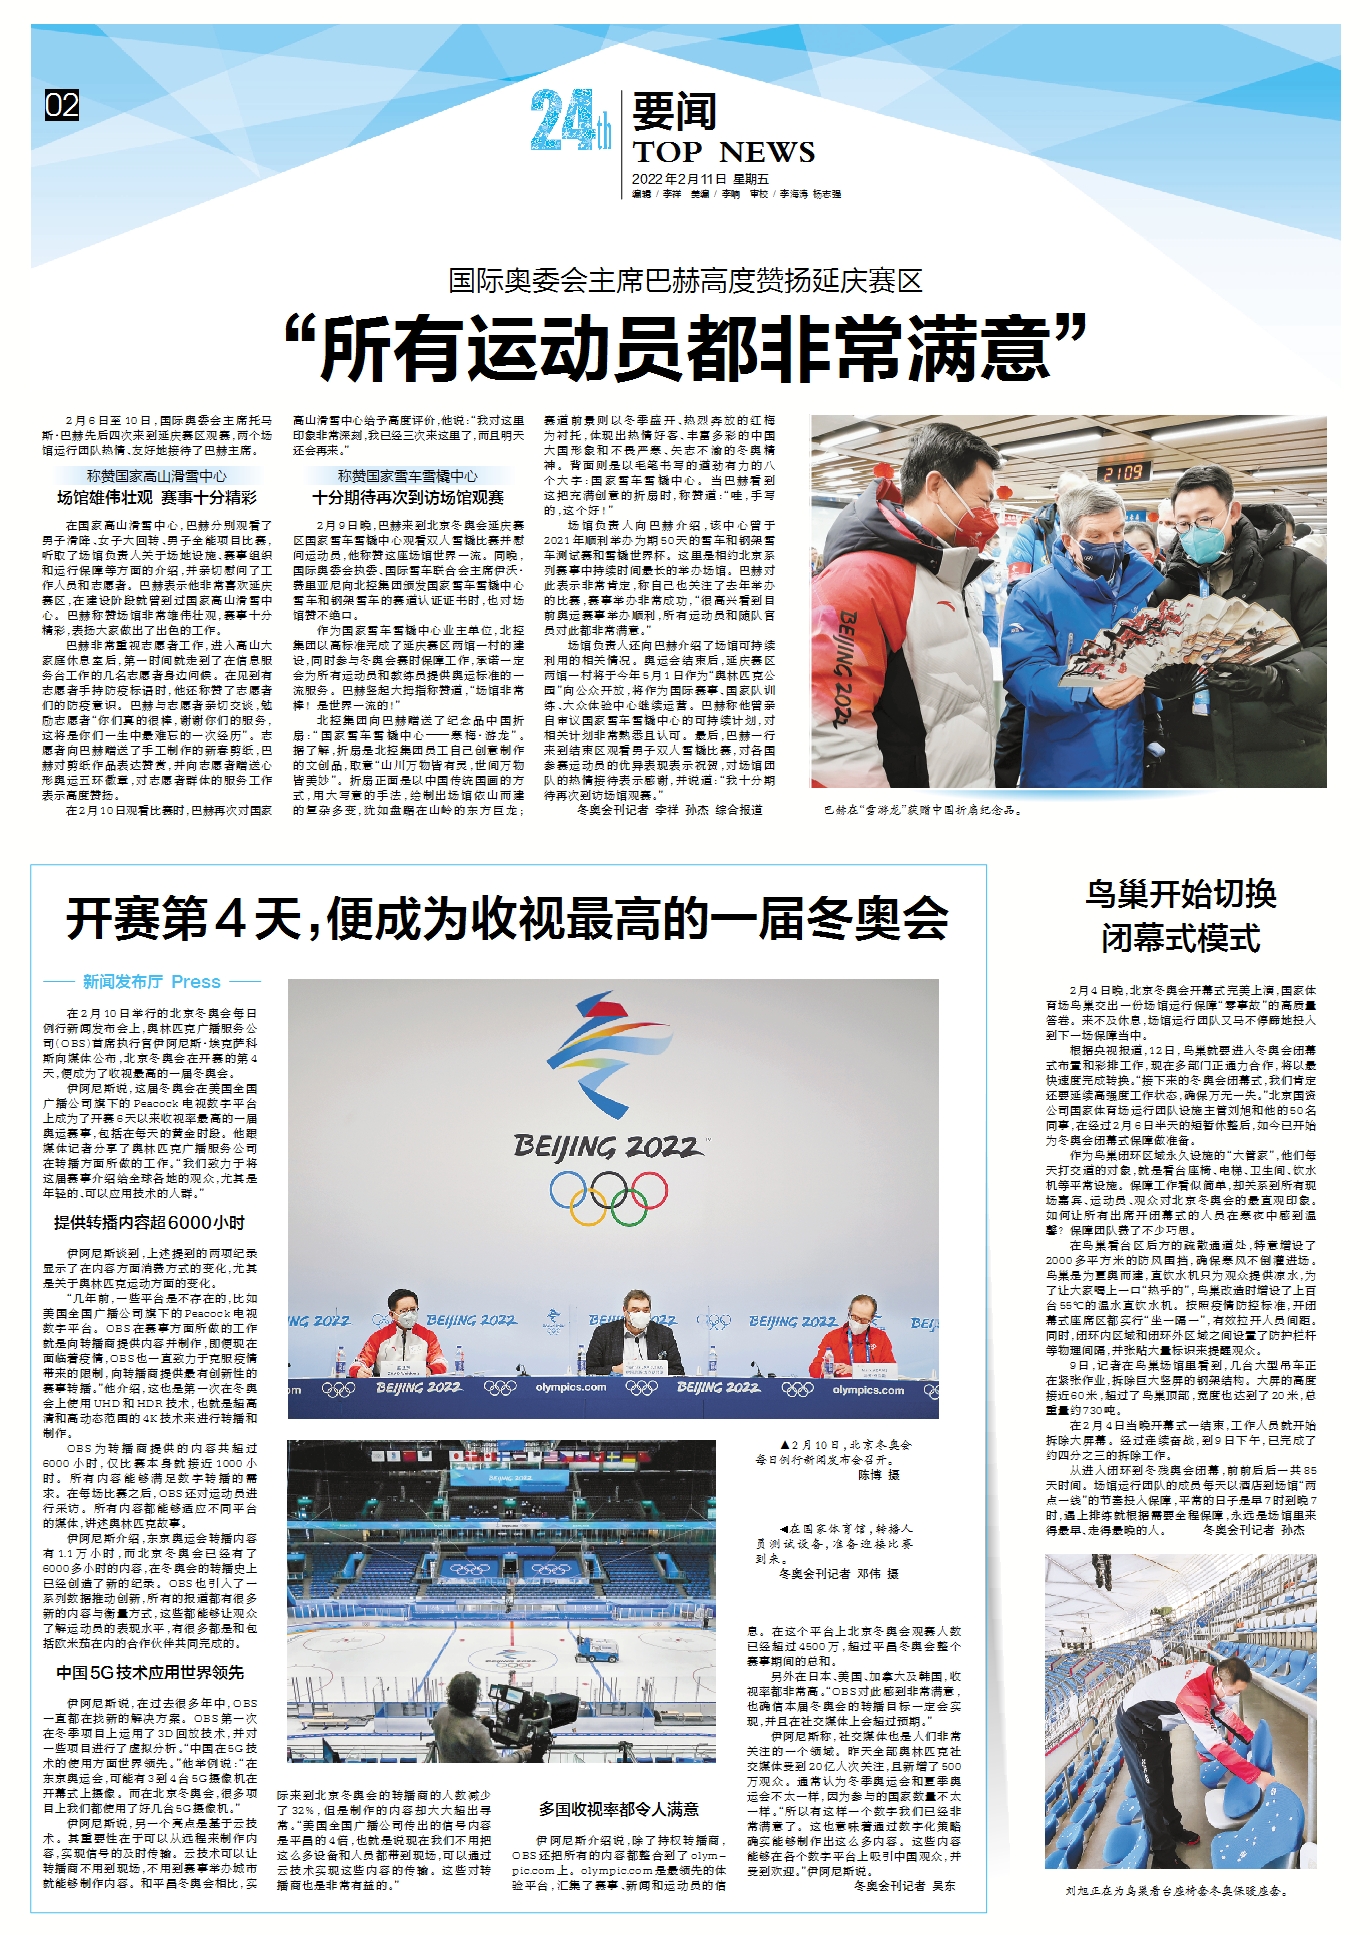 国际奥委会主席巴赫高度赞扬延庆赛区 “所有运动员都非常满意”